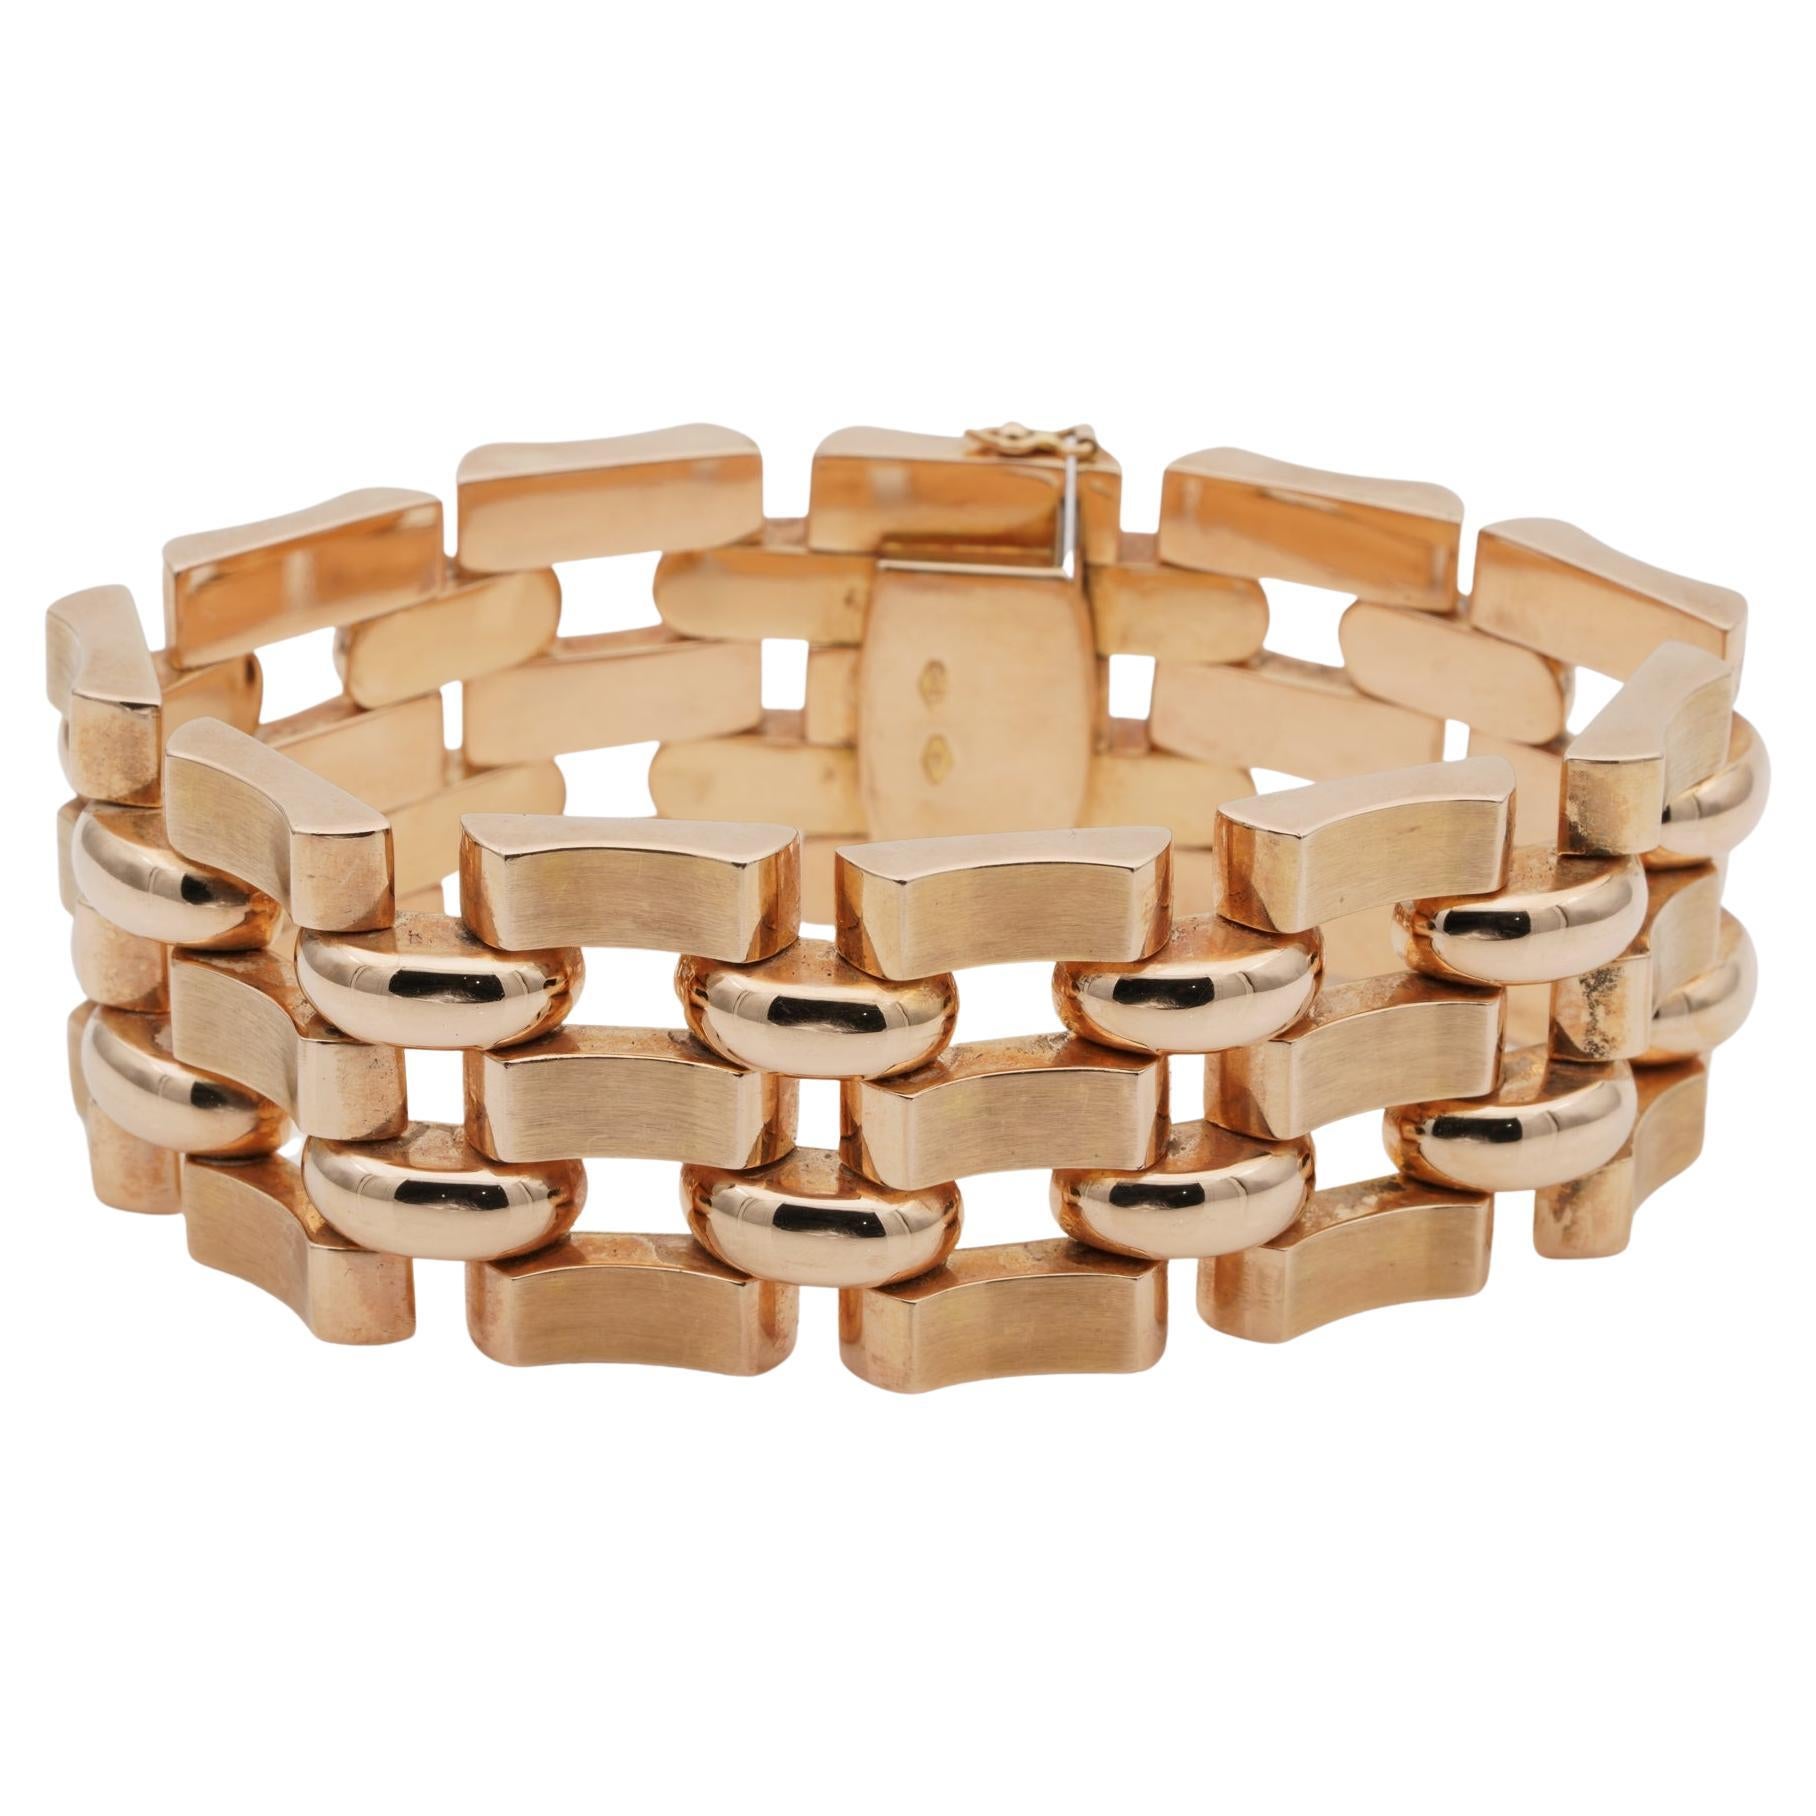 Louis Vuitton RARE Chain Link Bracelet-Monogram MINT Rose Gold Tone, Unisex